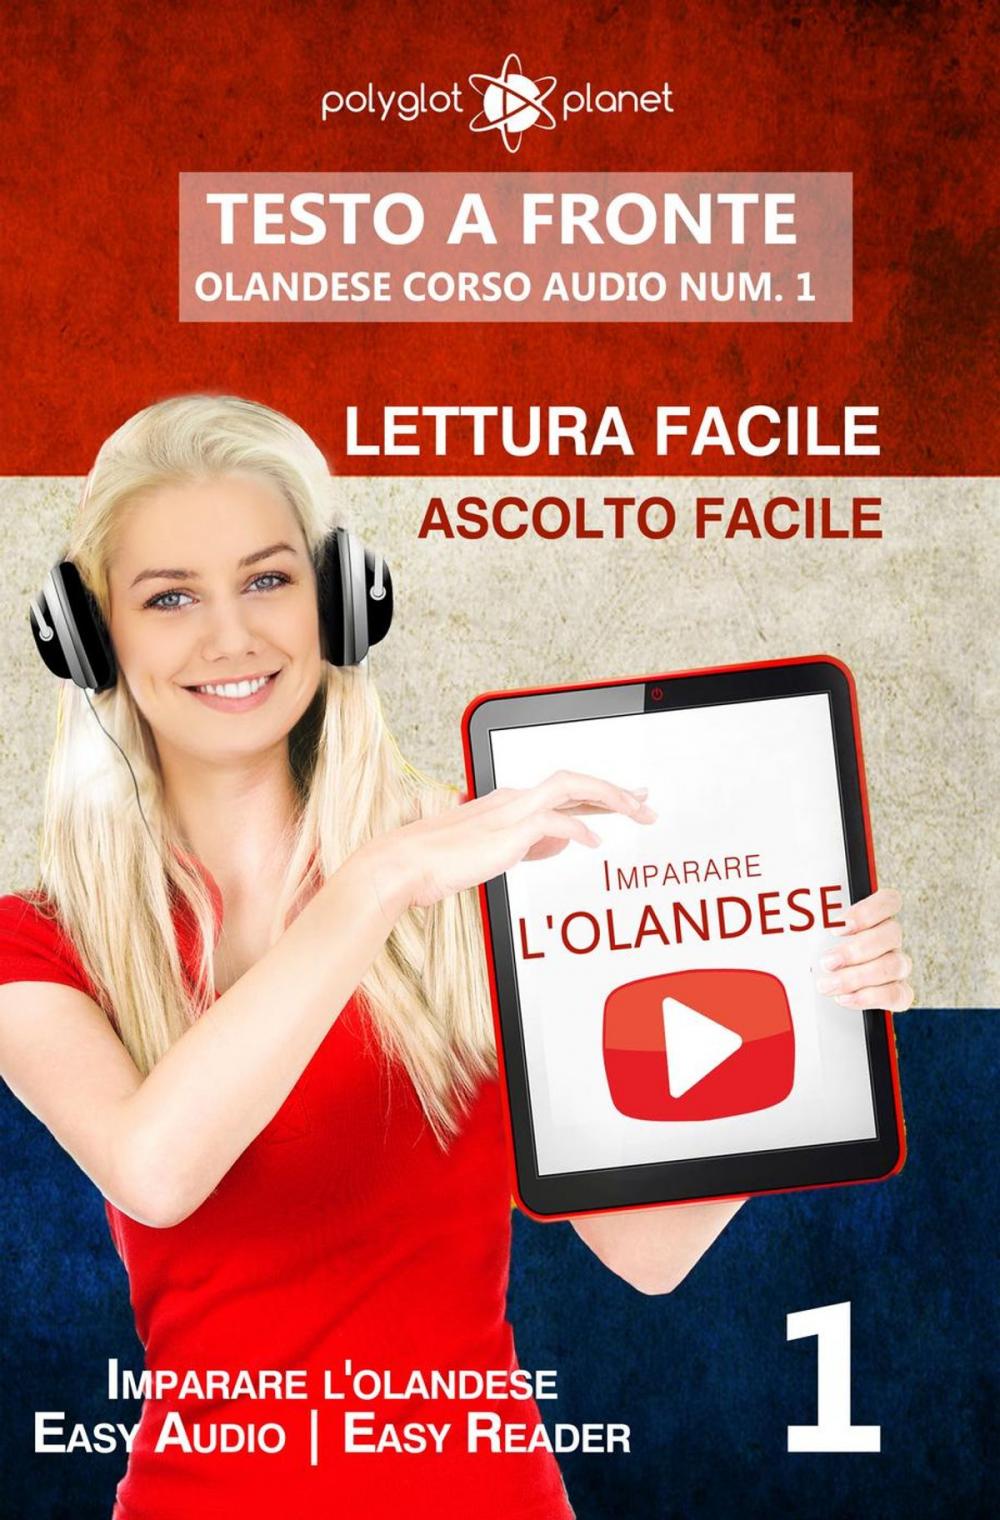 Big bigCover of Imparare l'olandese - Lettura facile | Ascolto facile | Testo a fronte - Olandese corso audio num. 1